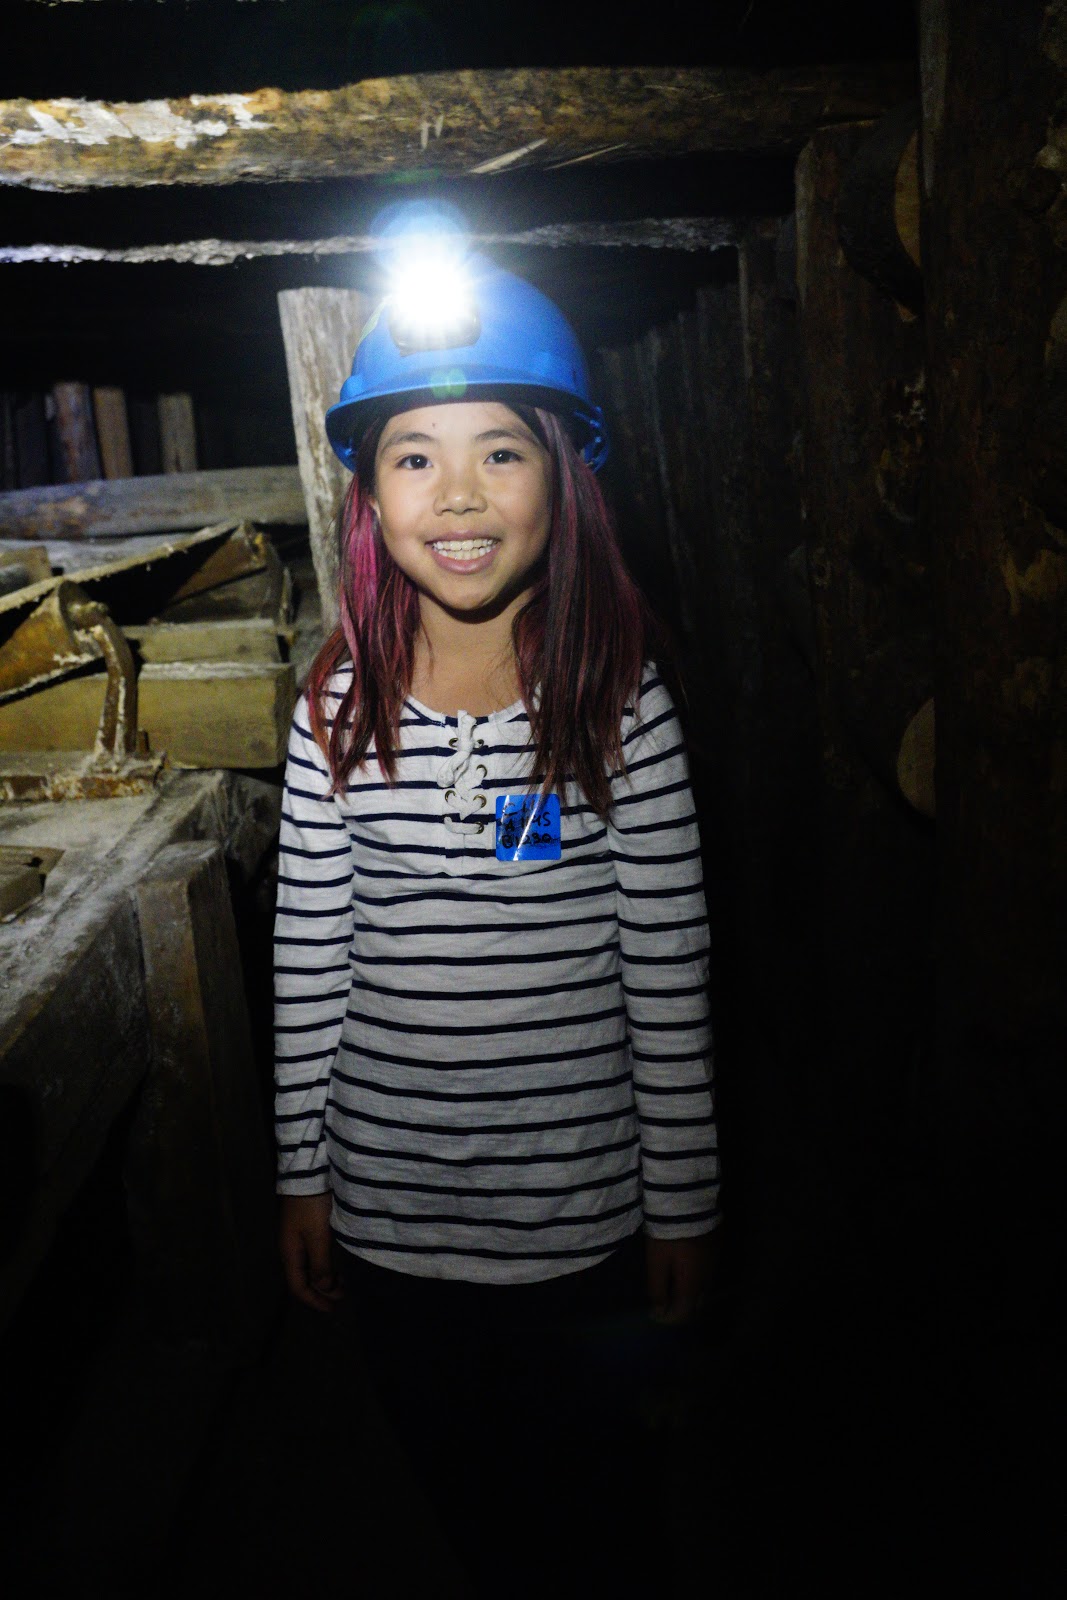 Mini Miner at Atlas Coal Mine